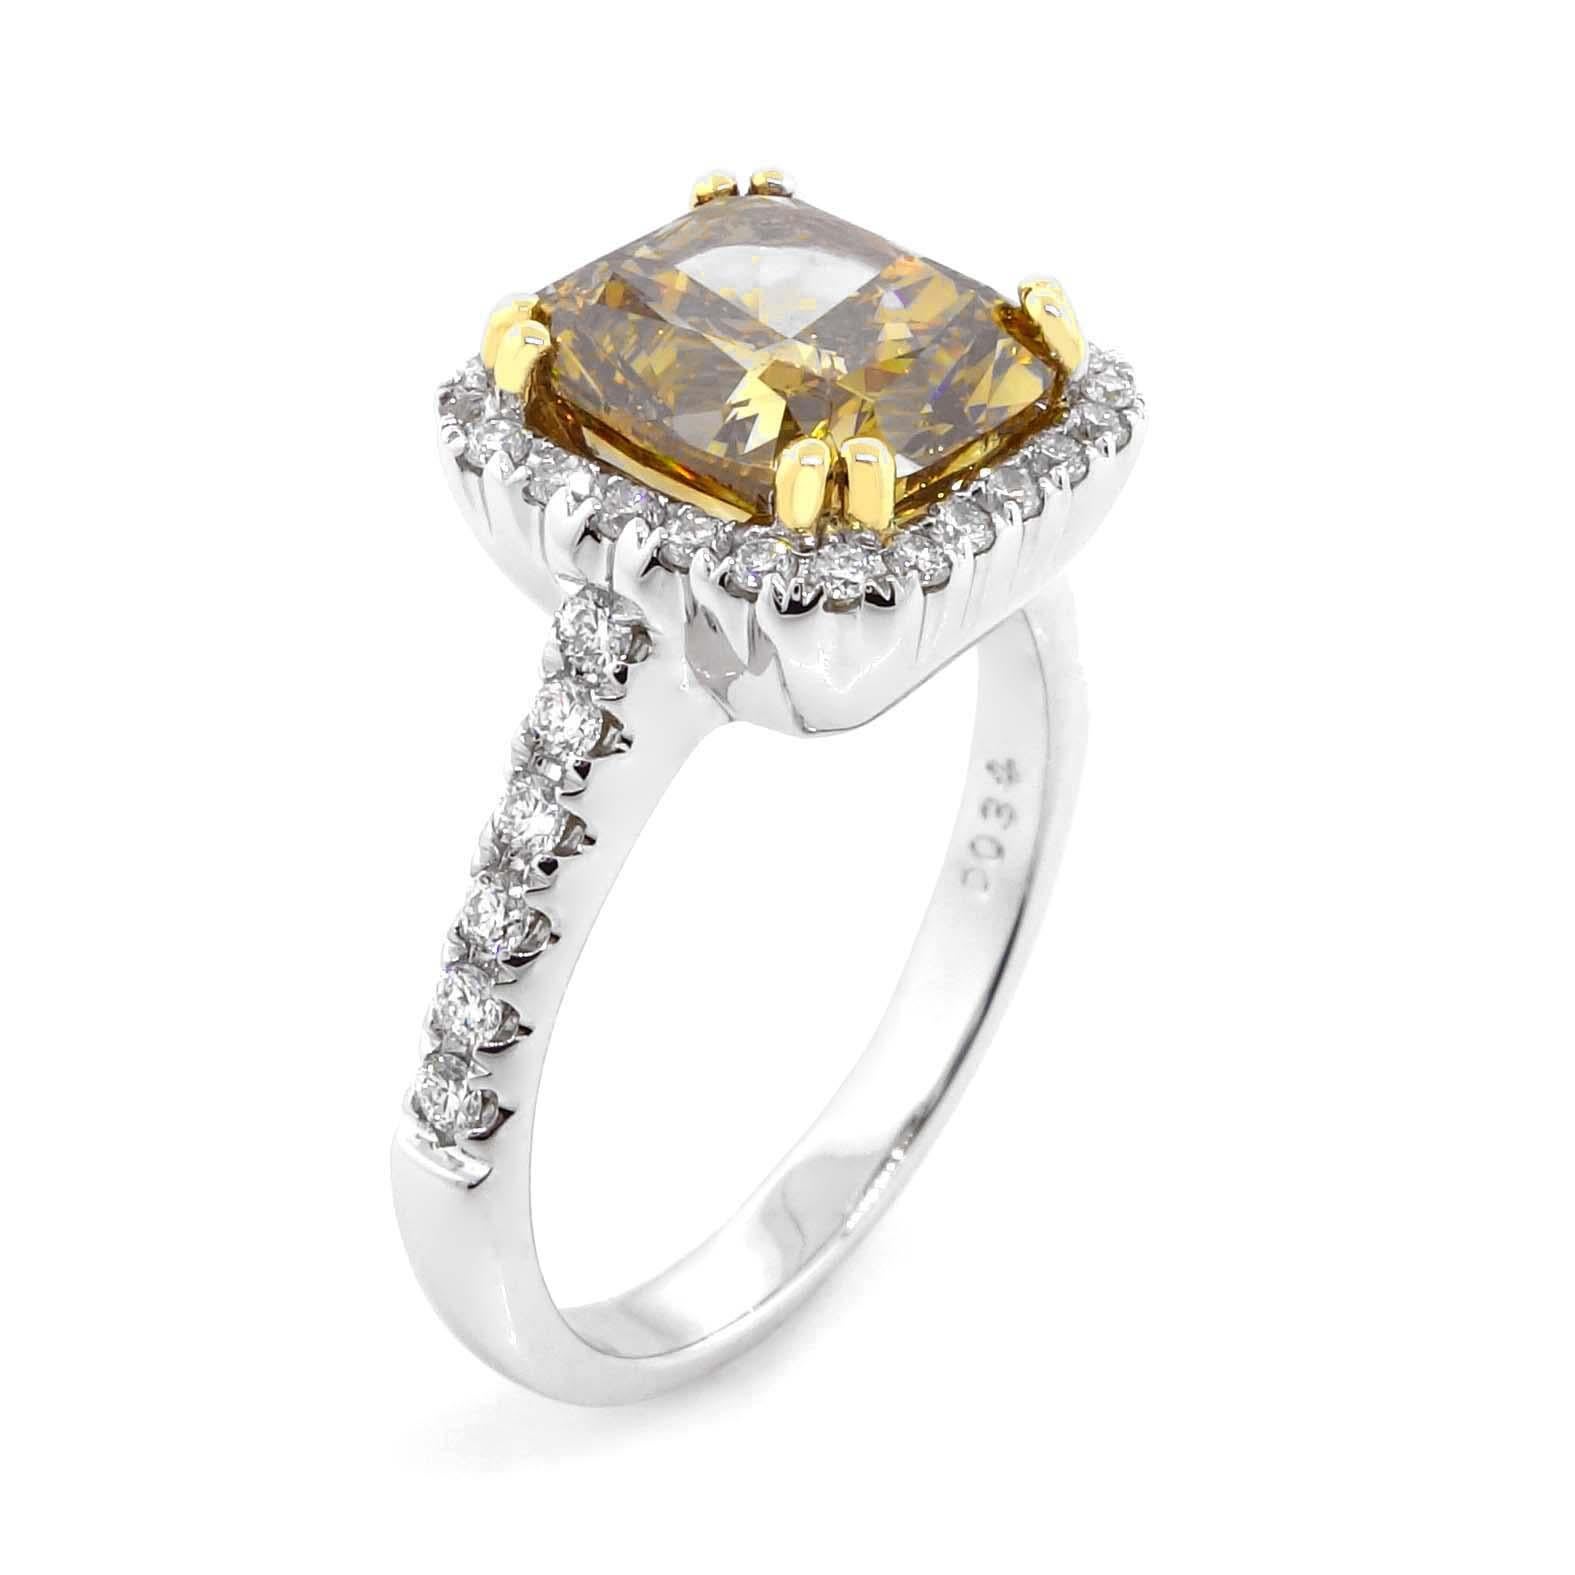 Un diamant coussin modifié de taille brillant certifié par la GIA d'environ 3,41 carats mesurant 8,70 x 8,20 x 5,27 mm. La couleur du diamant est brun foncé-jaune verdâtre. Le diamant est entouré de 36 diamants ronds d'environ 0,34 carats d'une